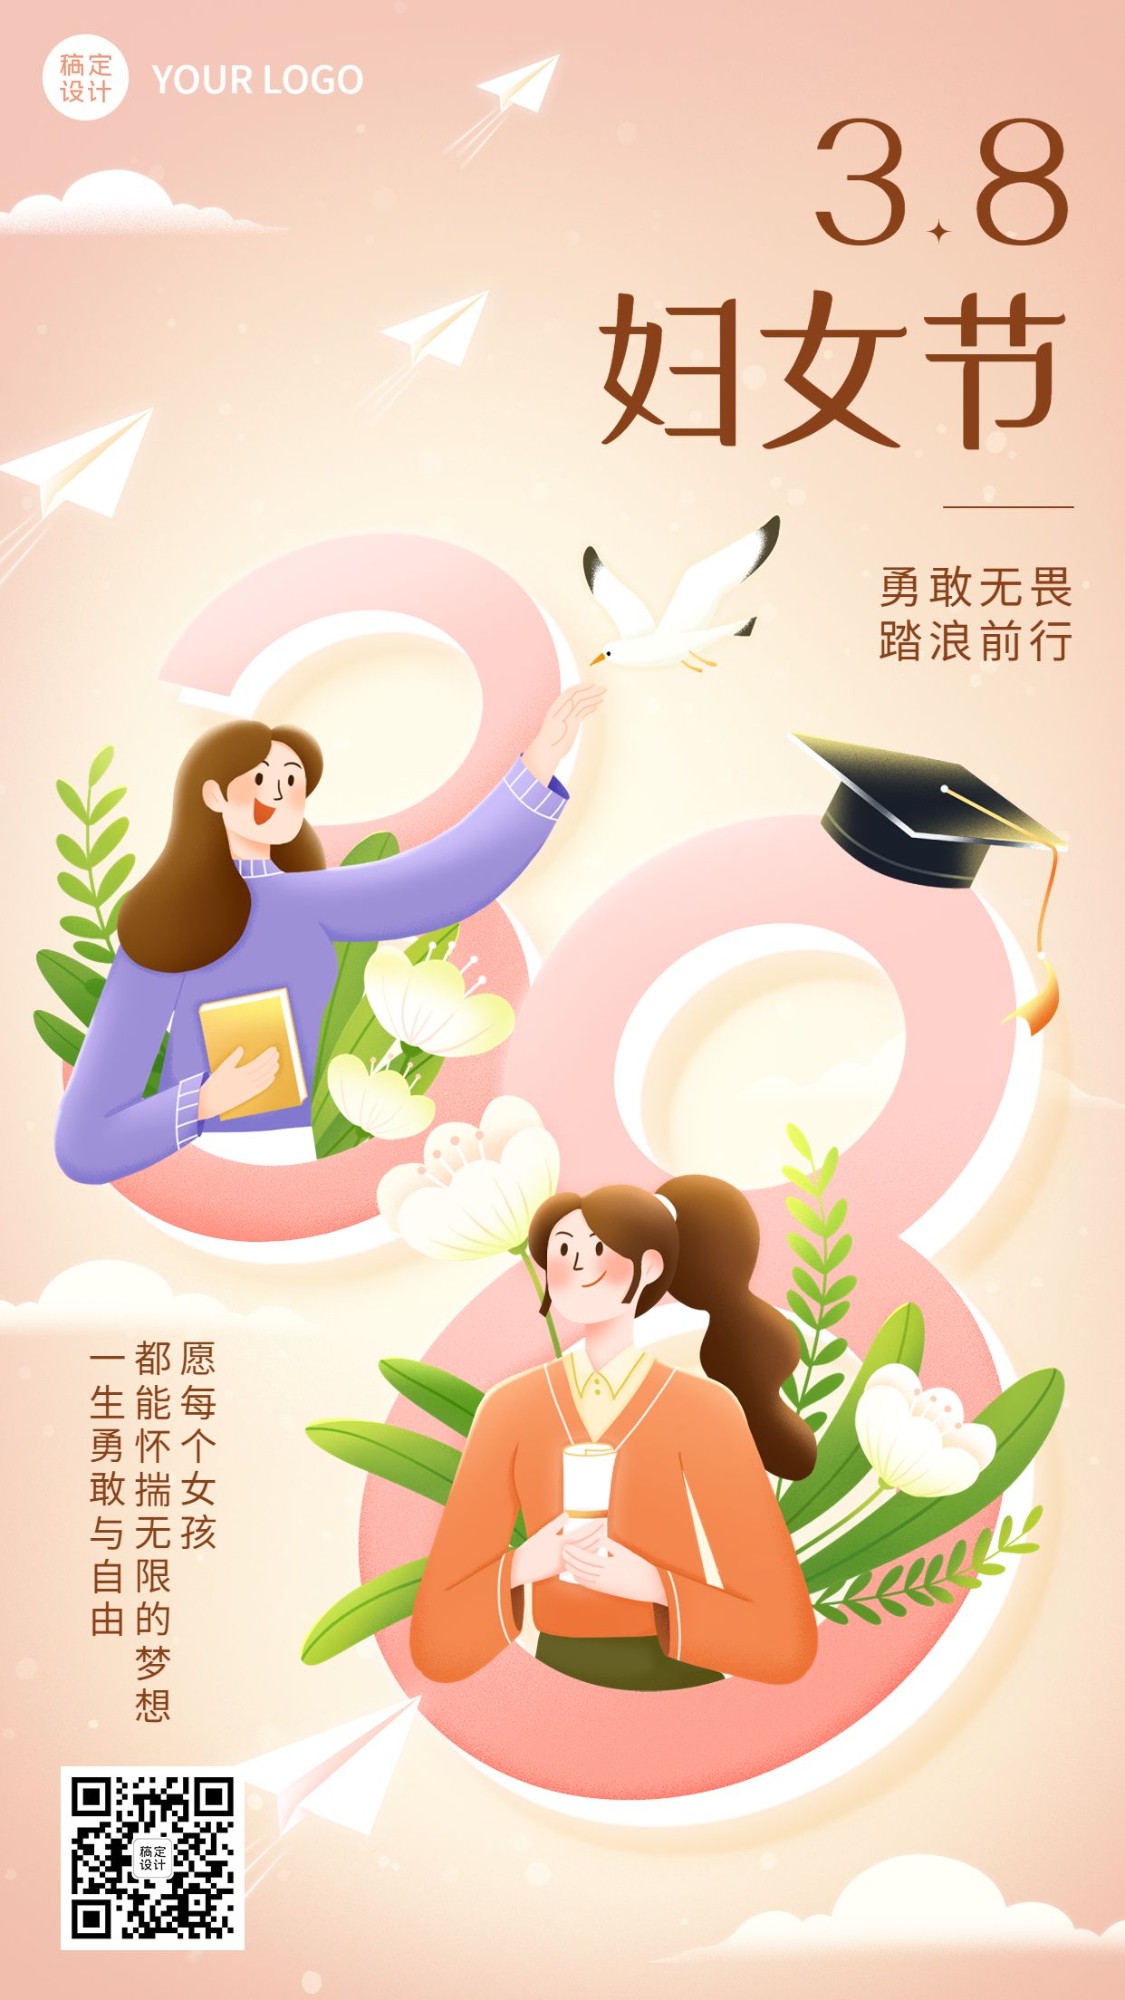 三八妇女节祝福教育培训行业节日祝福卡通插画手机海报预览效果